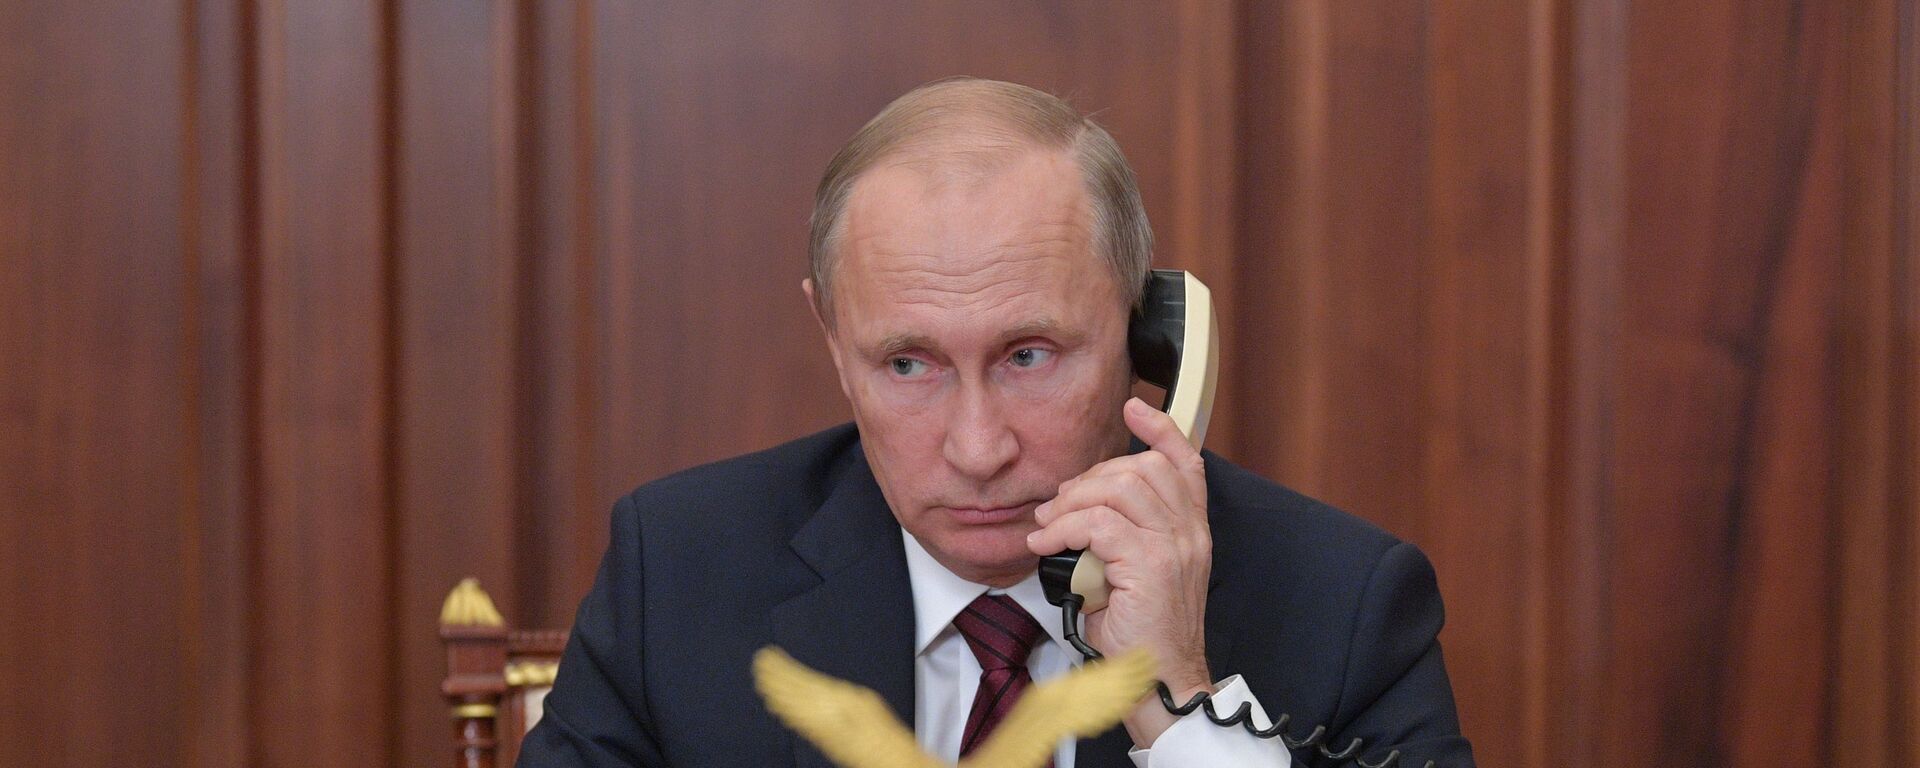 Президент РФ В. Путин ведет телефонный разговор - Sputnik Грузия, 1920, 12.03.2021